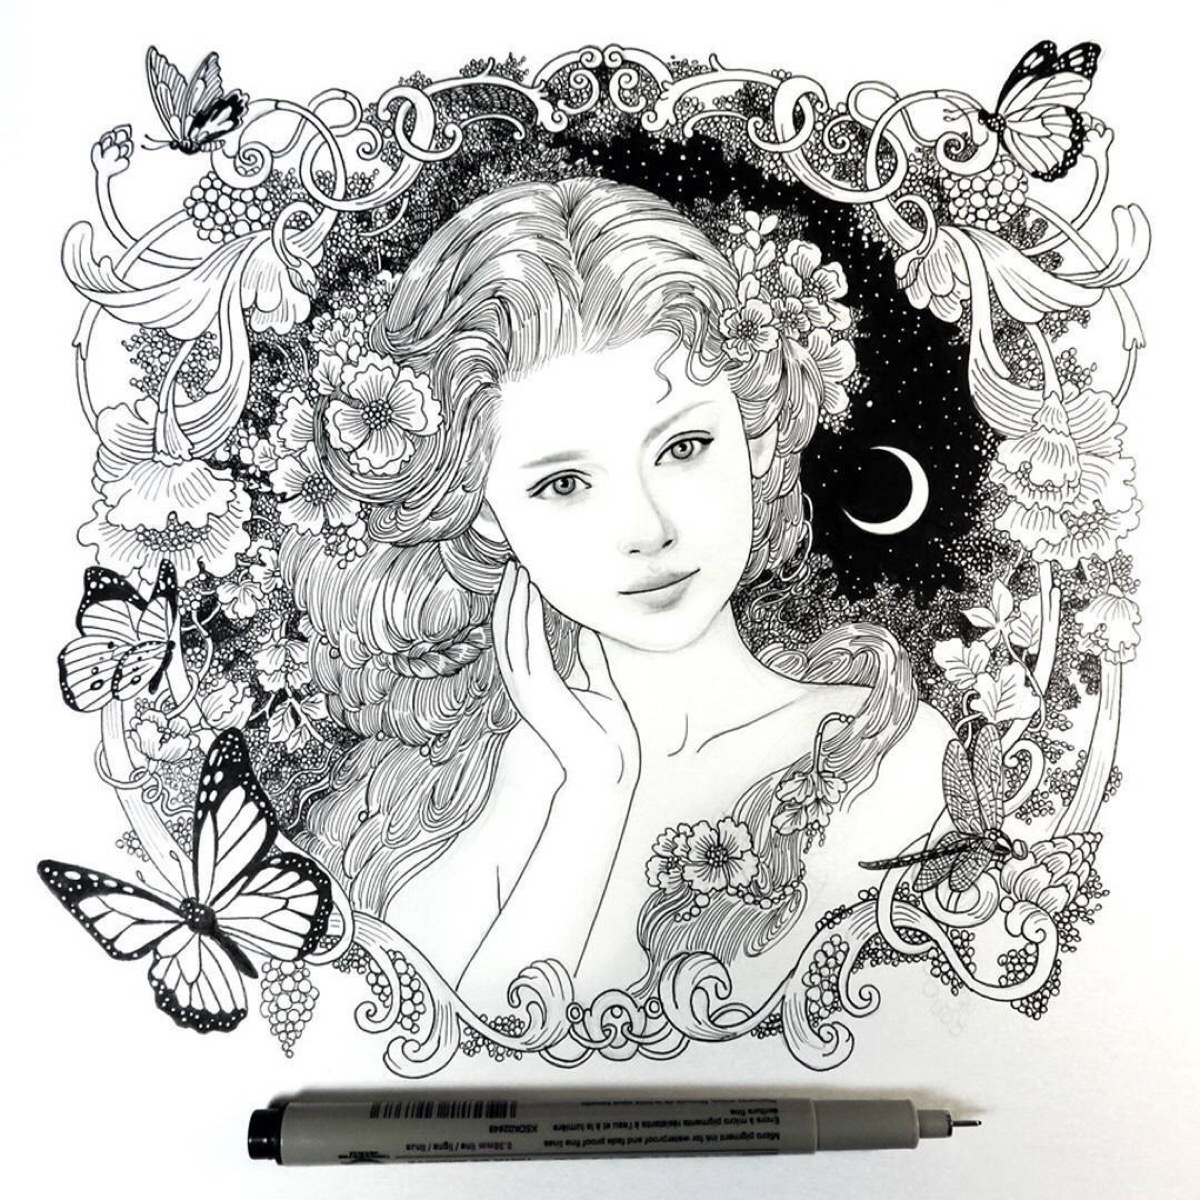 北欧神话里的少女,针管笔黑白线描作品来自艺术家annie stegg gerard.